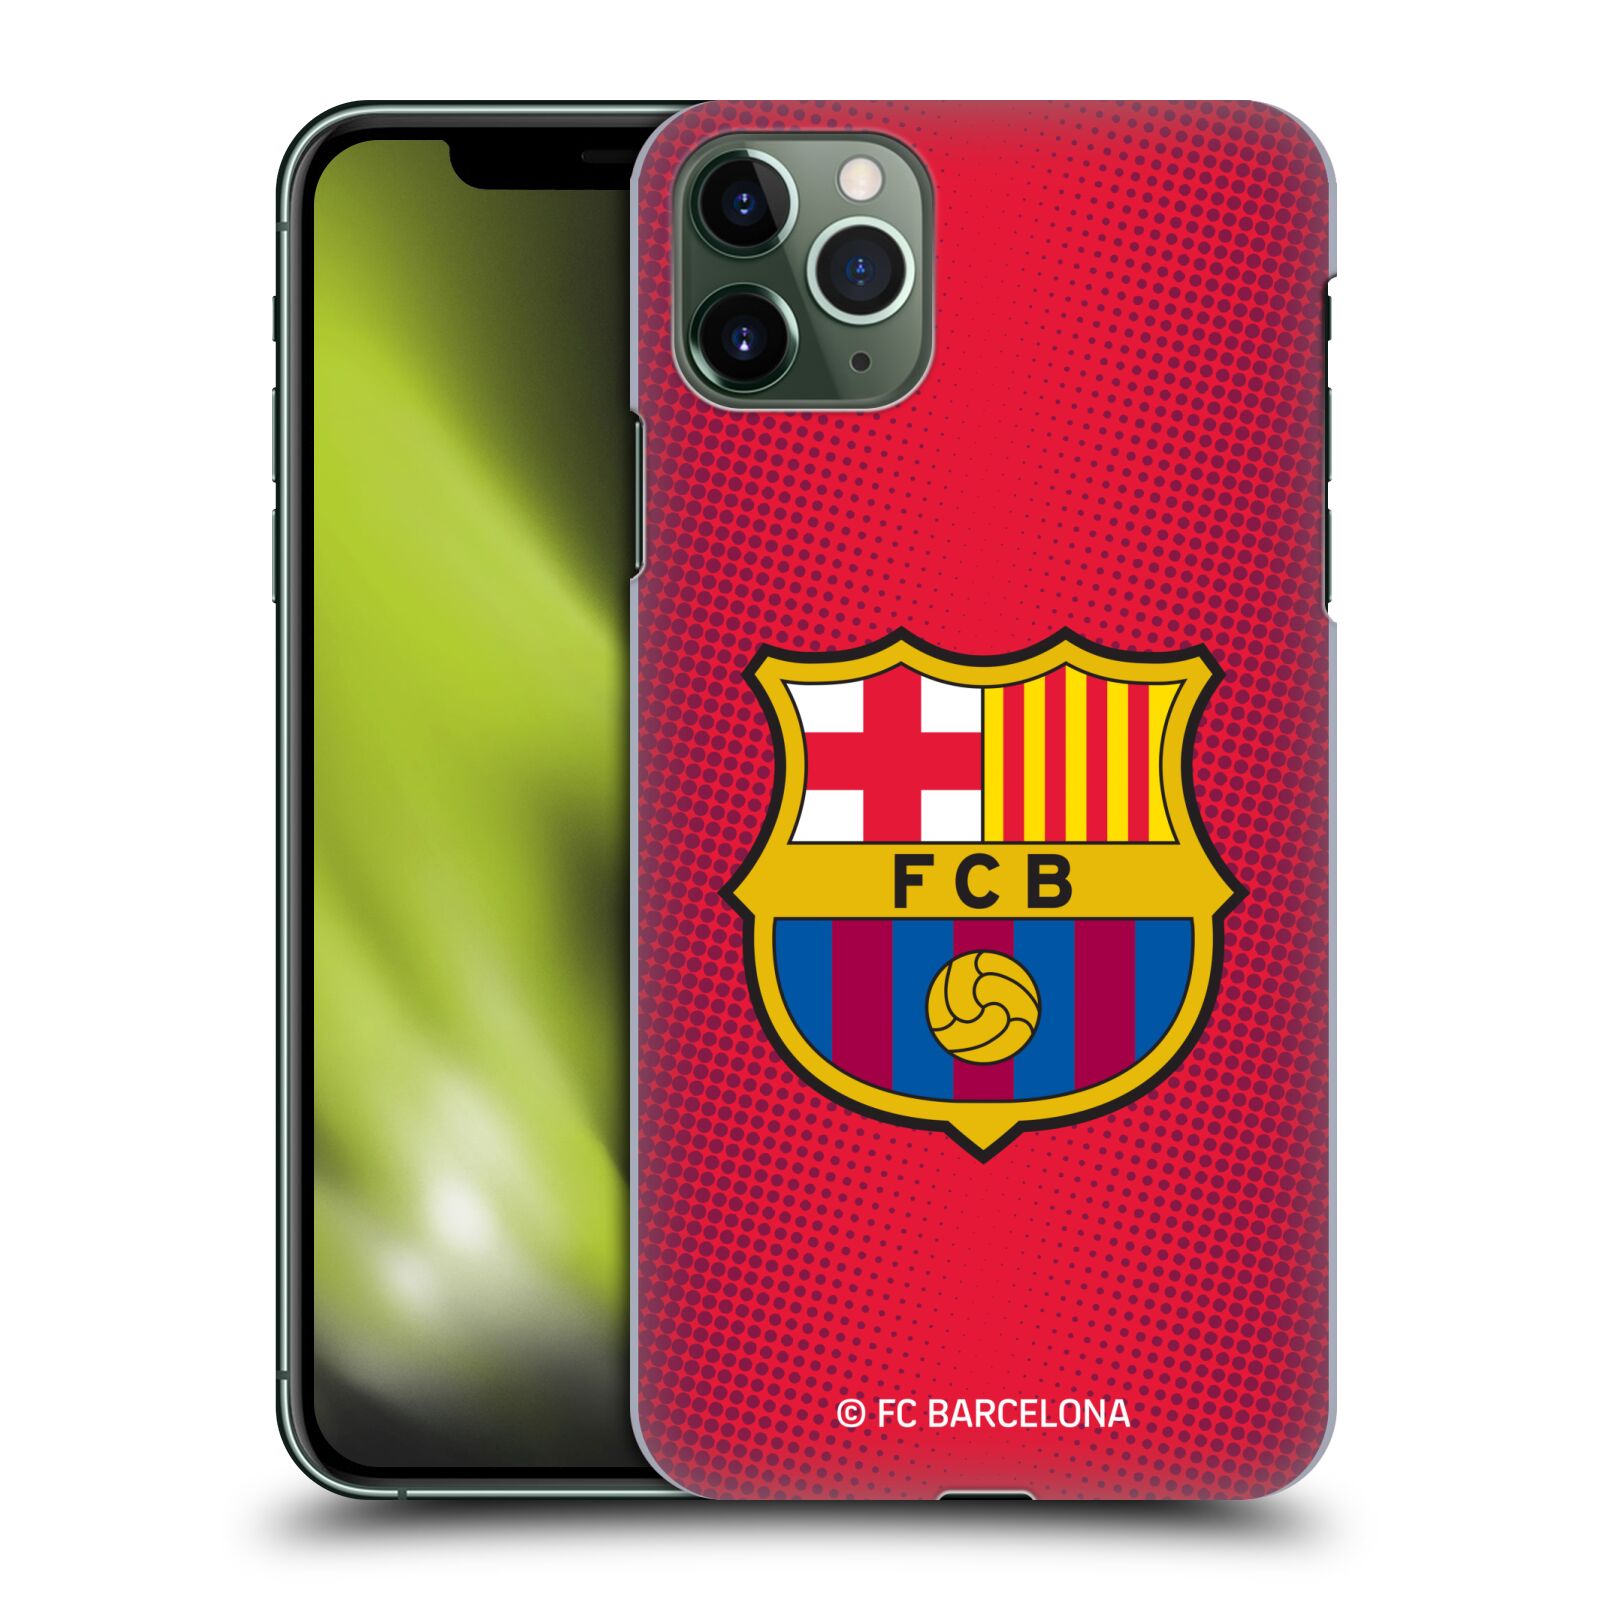 Obal na mobil Apple Iphone 11 PRO MAX - HEAD CASE - FC BARCELONA - Velký znak červená a modrá